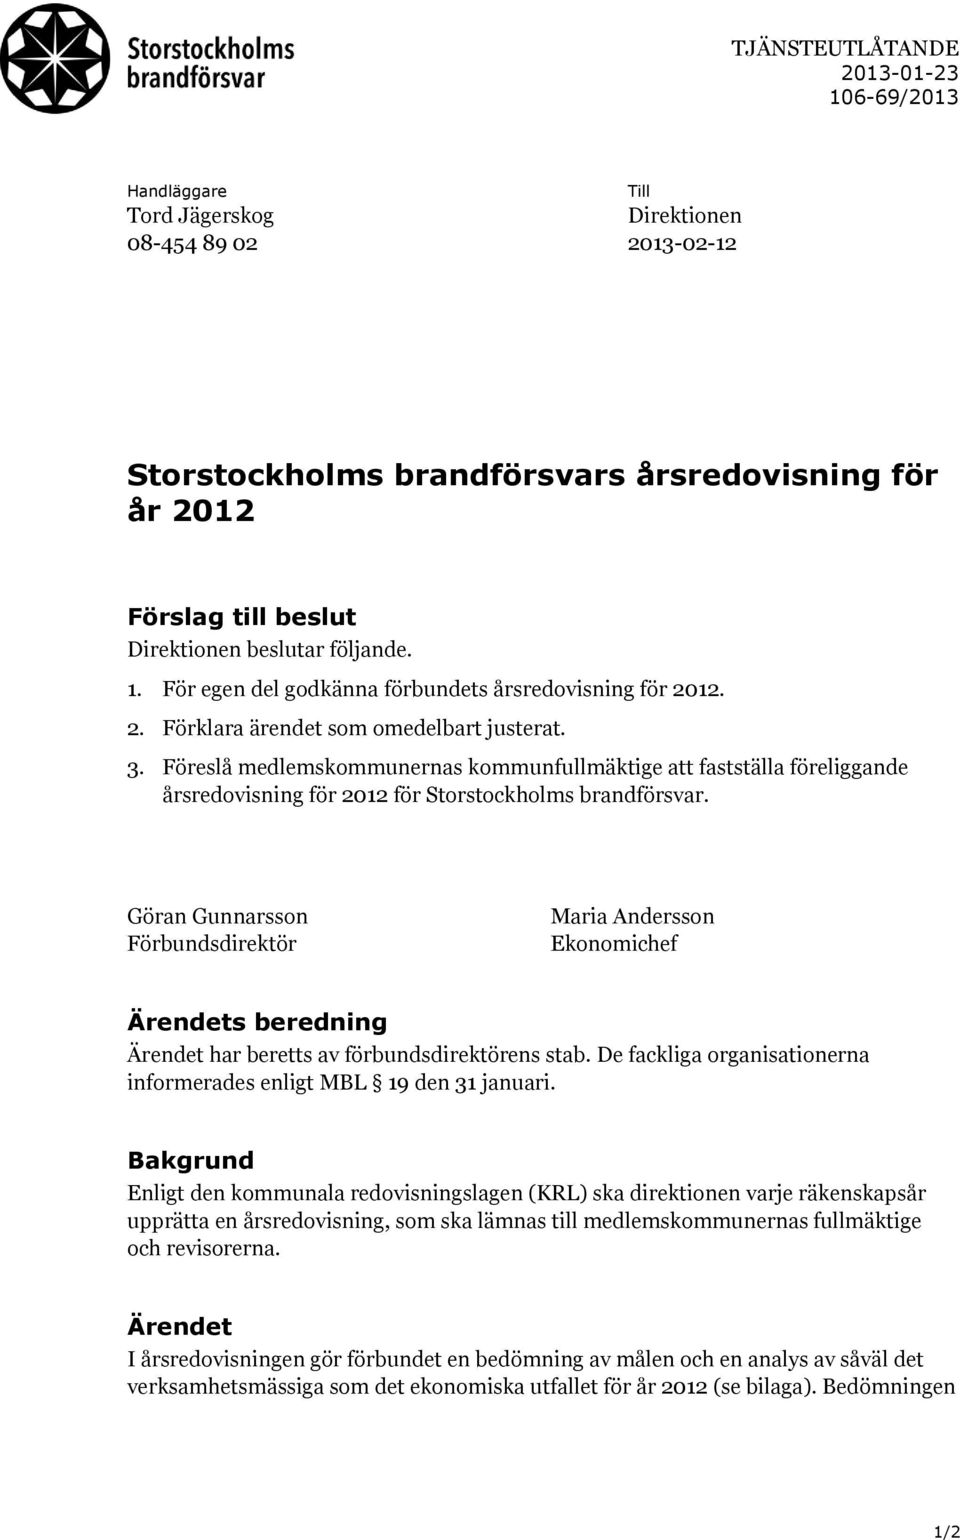 Föreslå medlemskommunernas kommunfullmäktige att fastställa föreliggande årsredovisning för 2012 för Storstockholms brandförsvar.